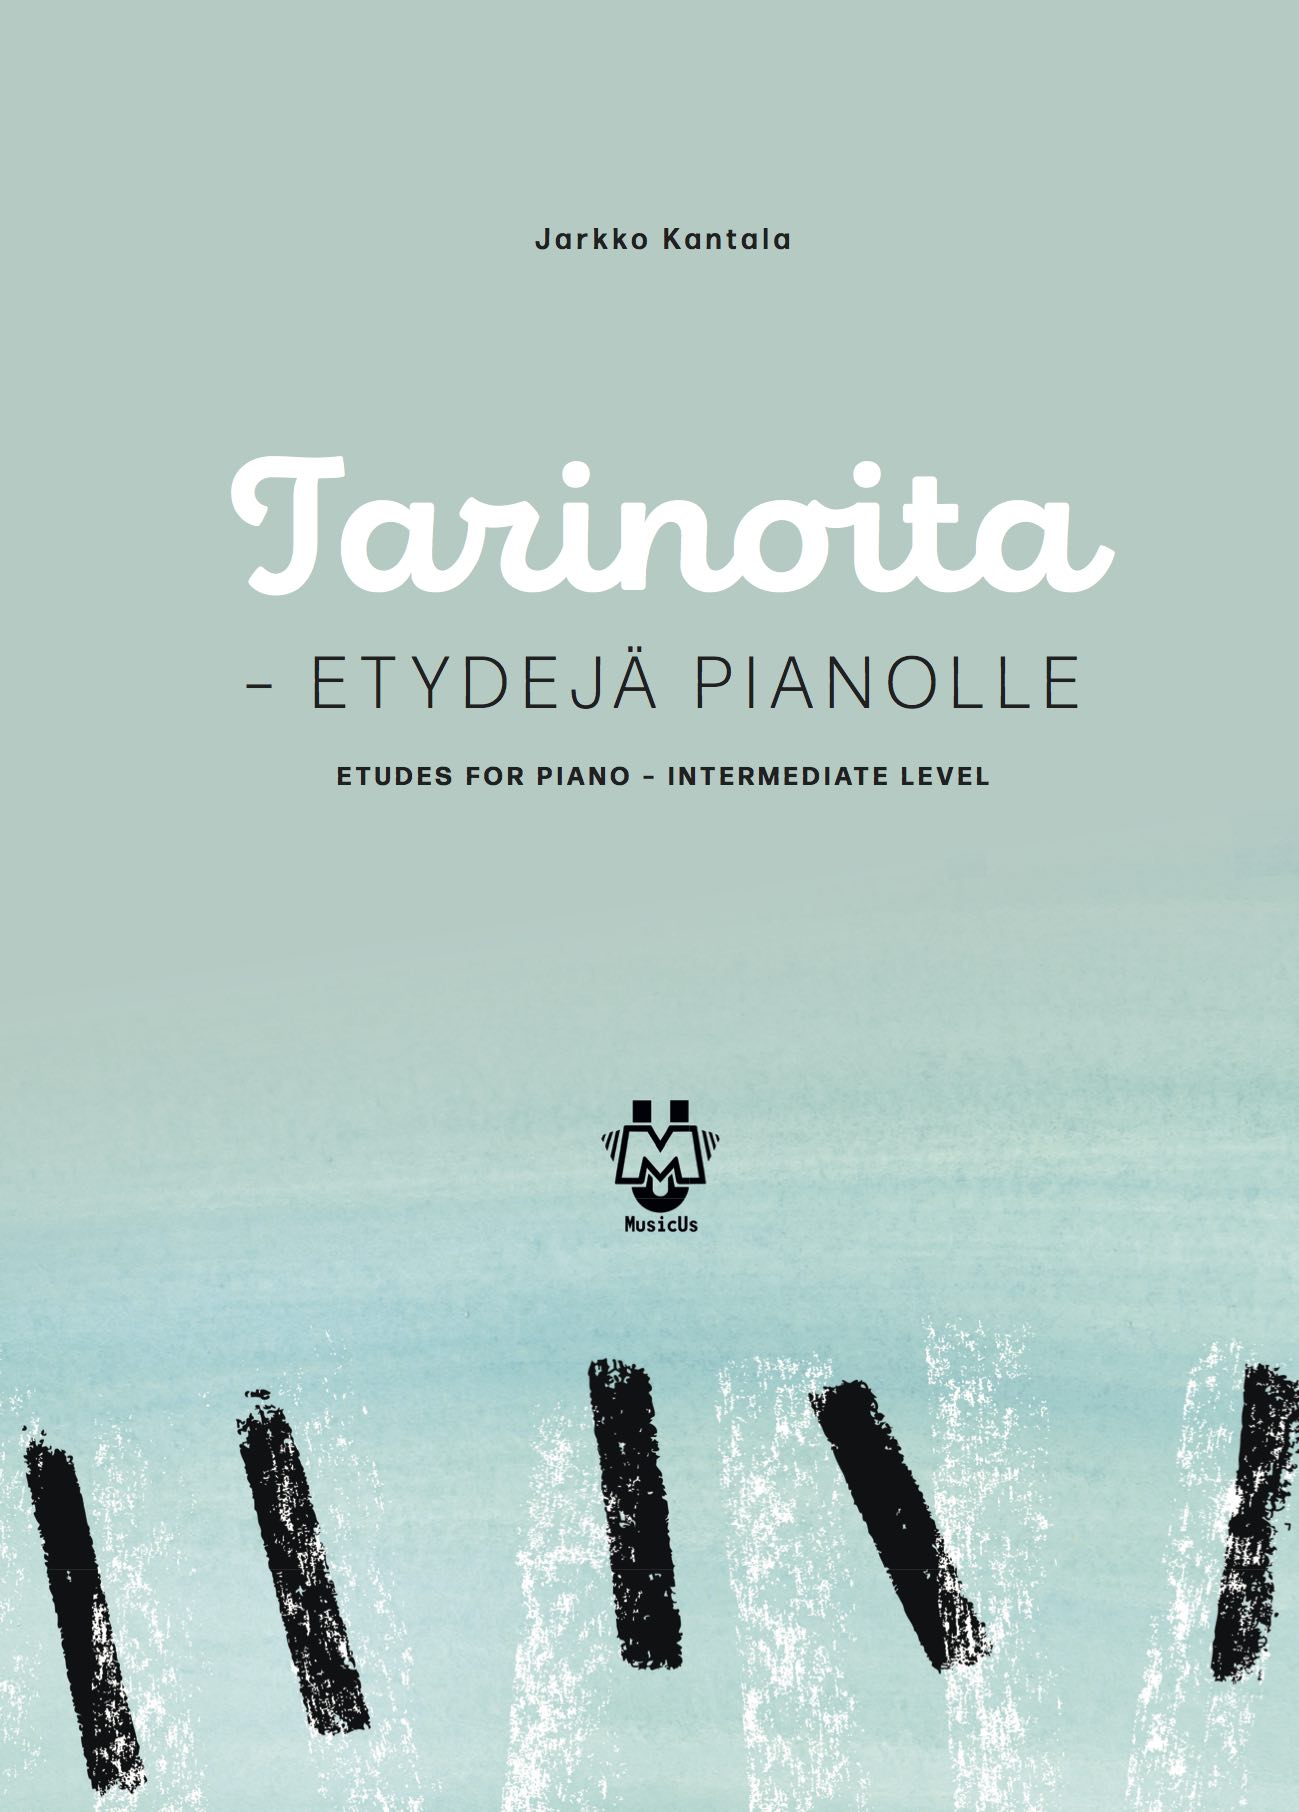 Tarinoita - Etydejä pianolle